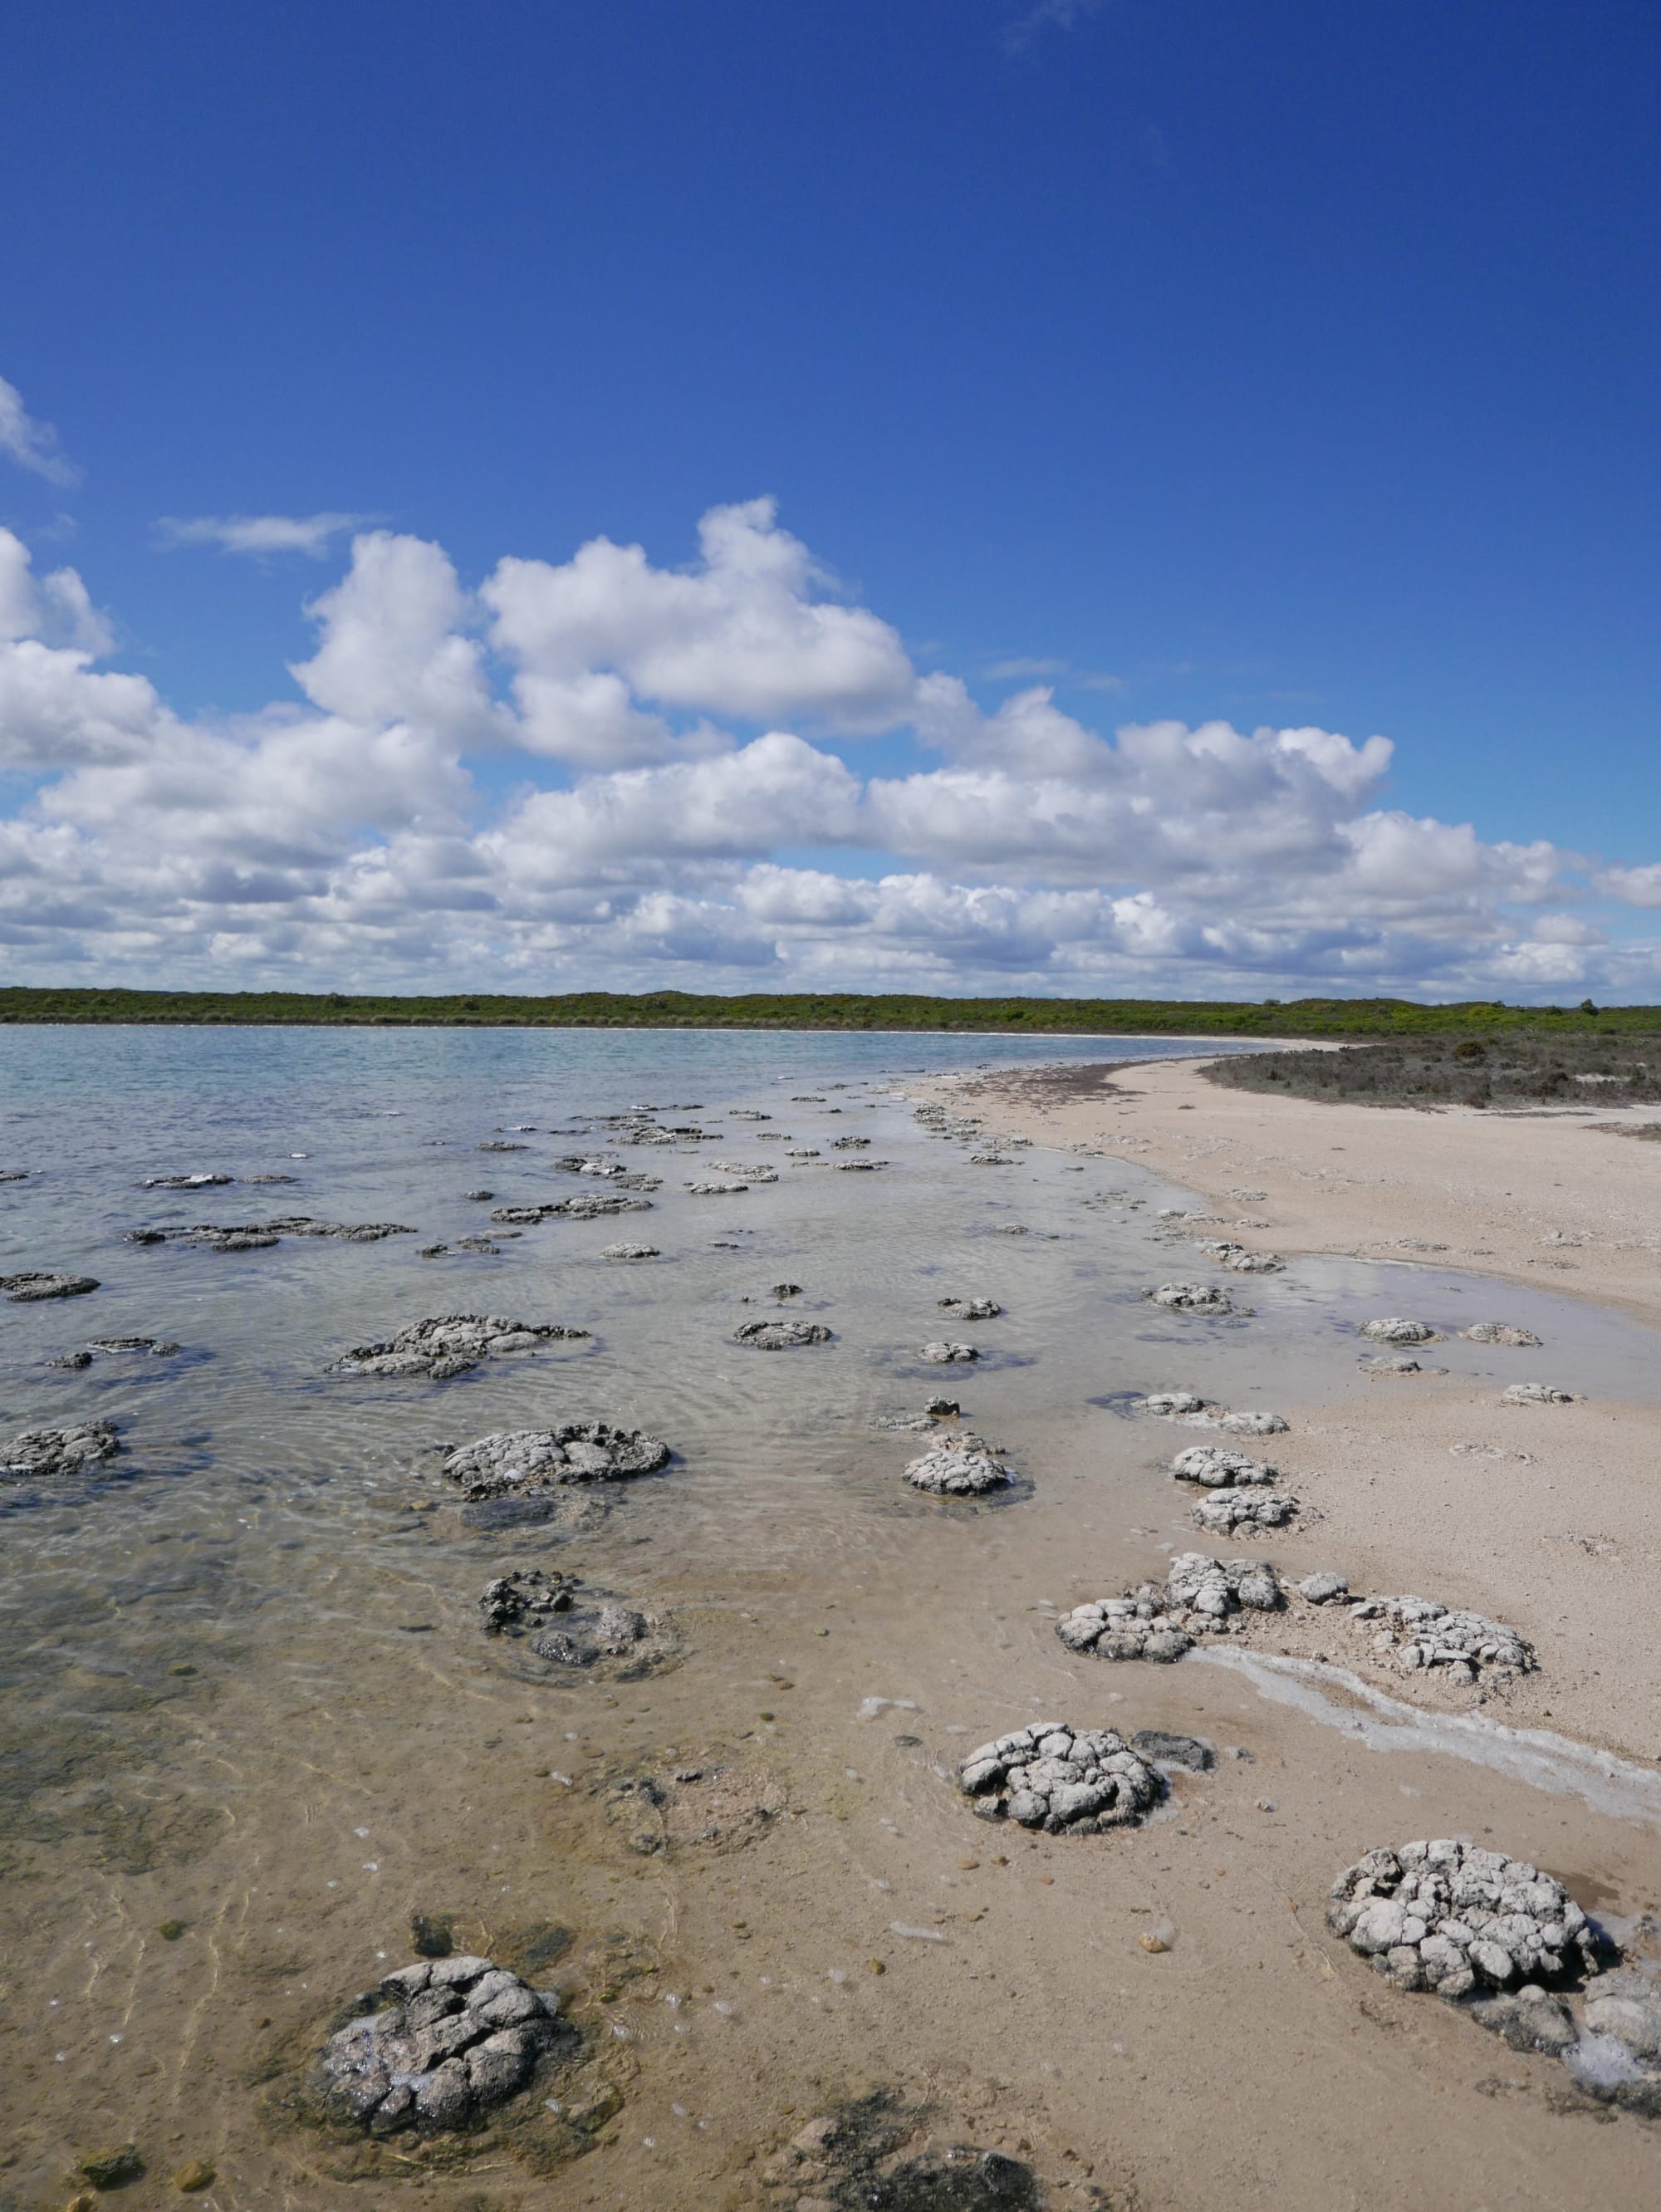 Photo by Author — Stromatolites at Lake Thetis, Cervantes, WA 6511, Australia